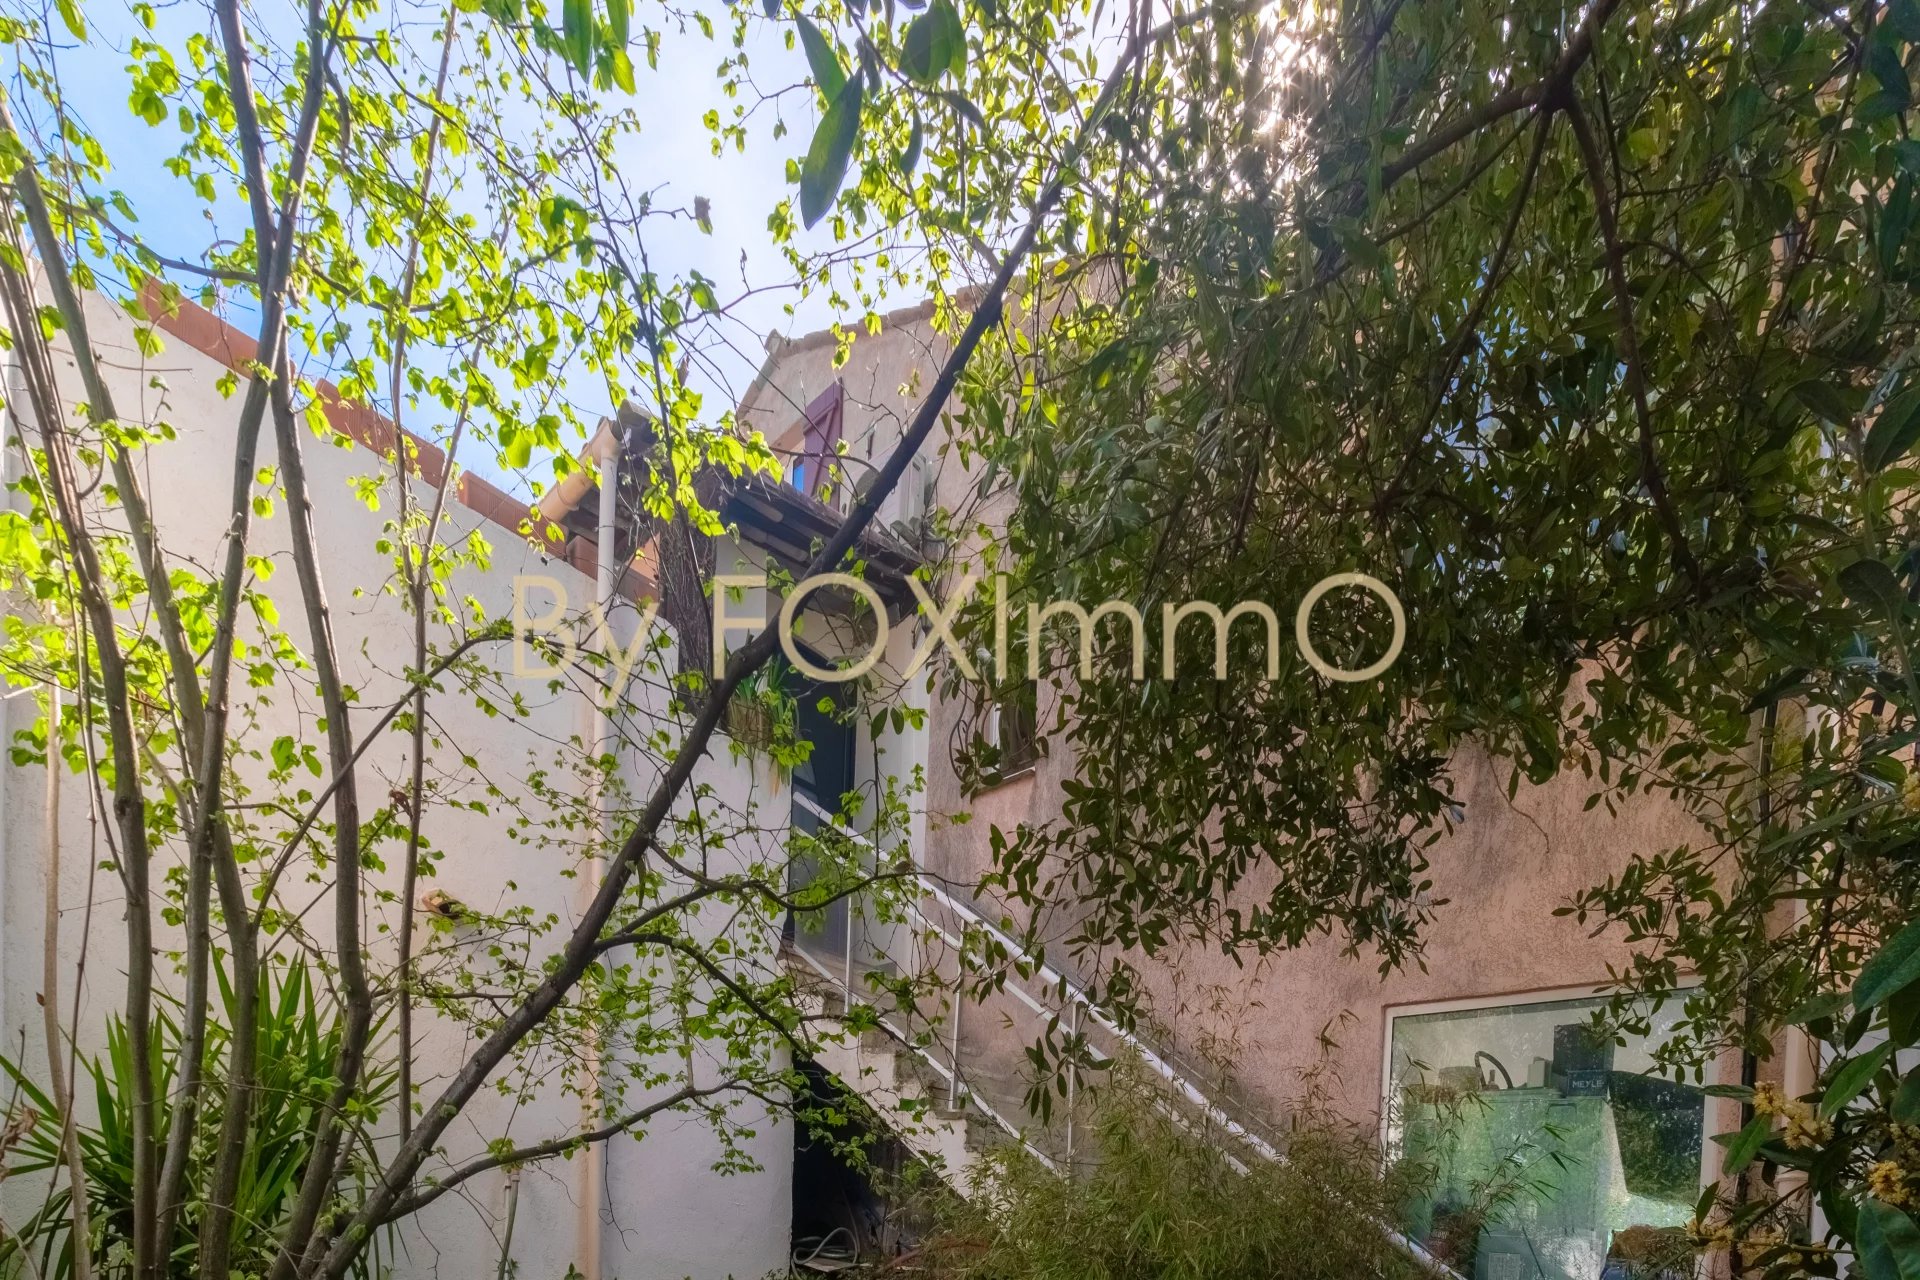 Foximmo Immobilier Maison Route des Blaquières Saint-Paul-de-Vence